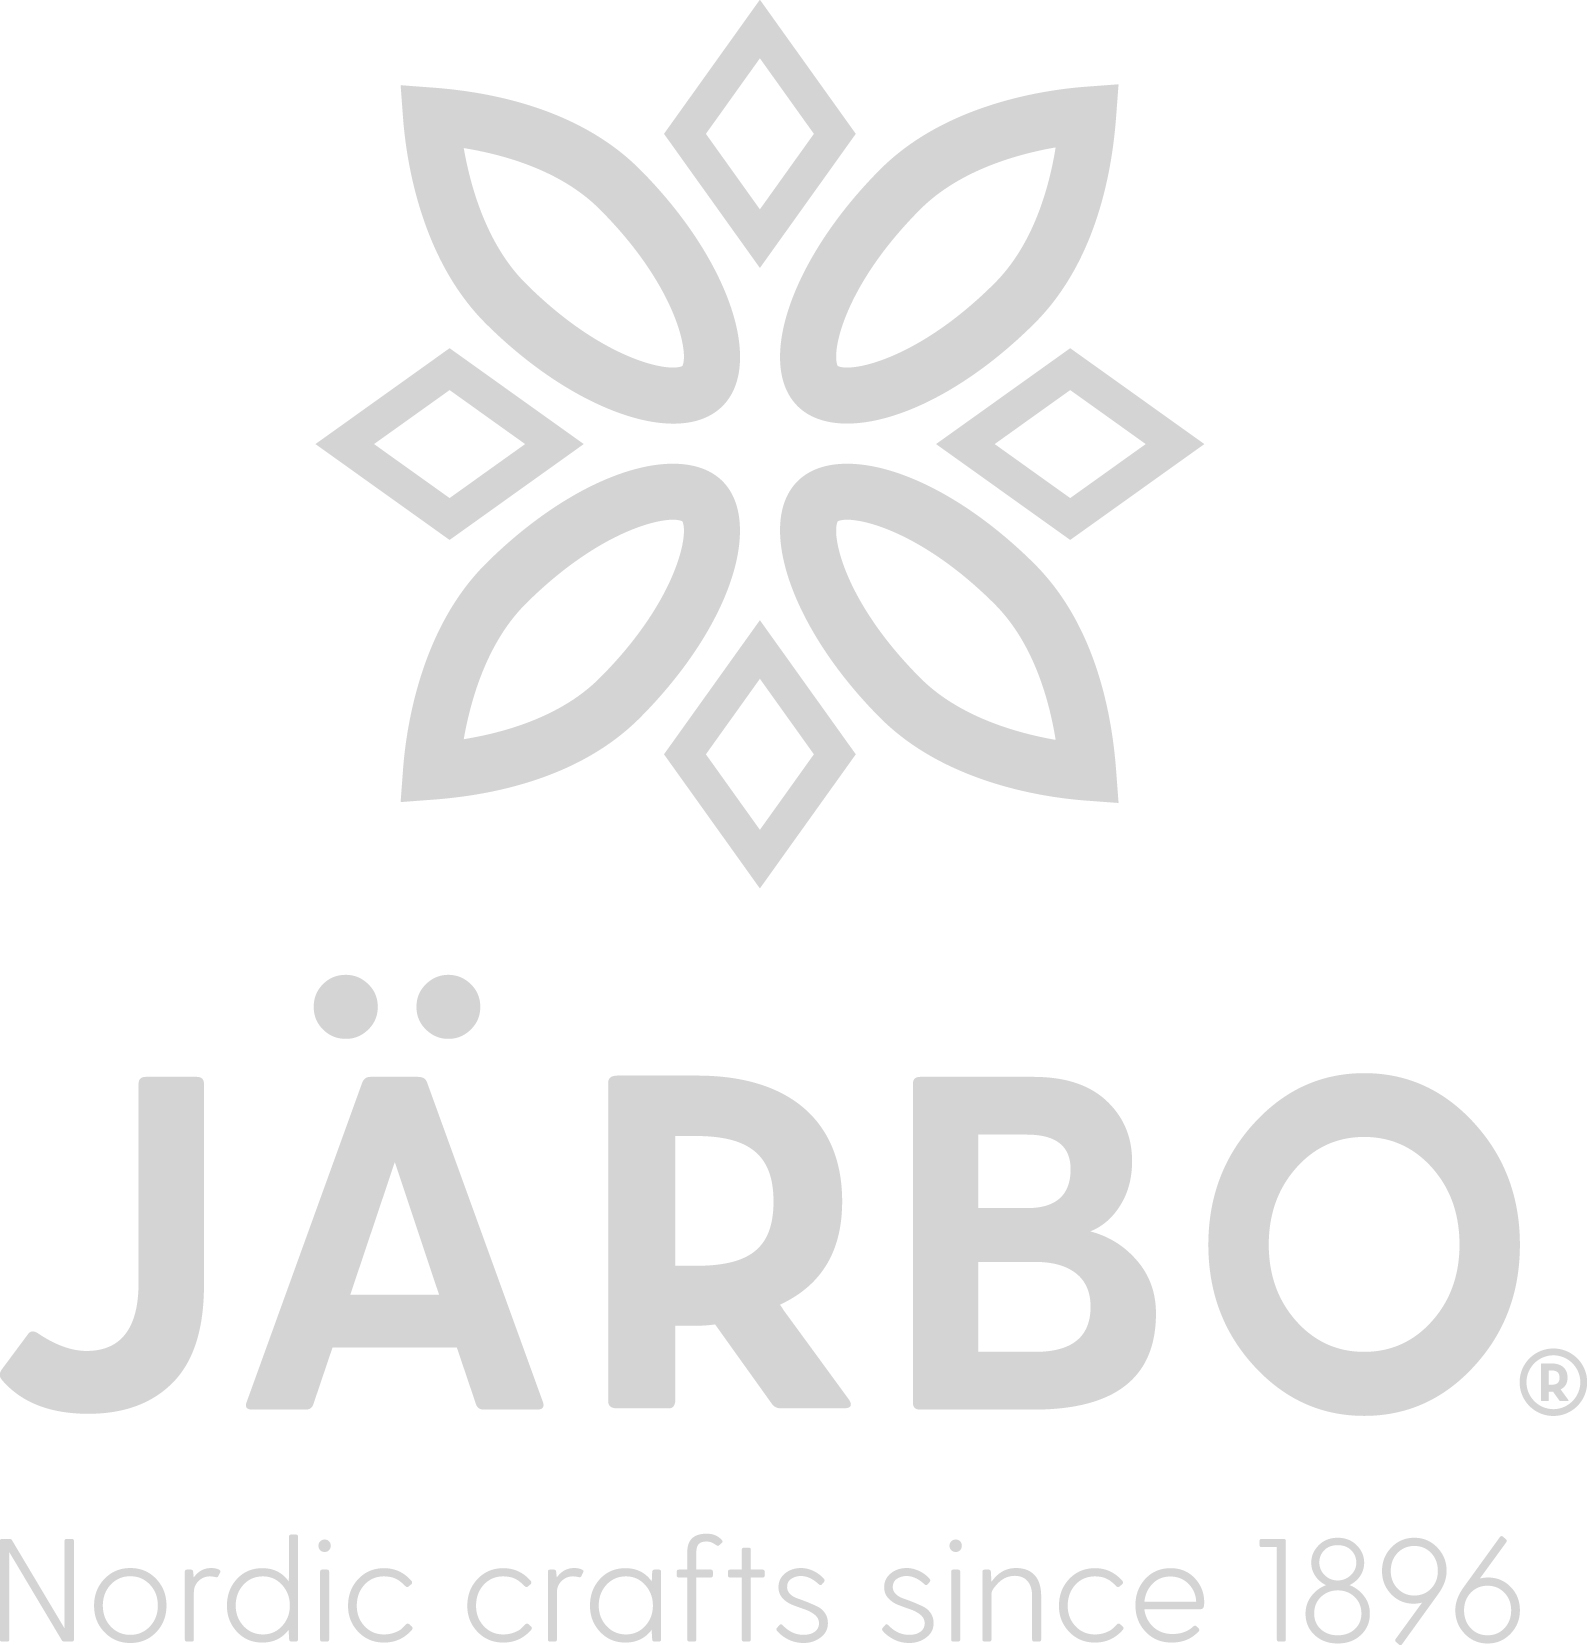 Sætte statisk lort Gratis strikkeopskrifter og hækleopskrifter til baby - Järbo Garn